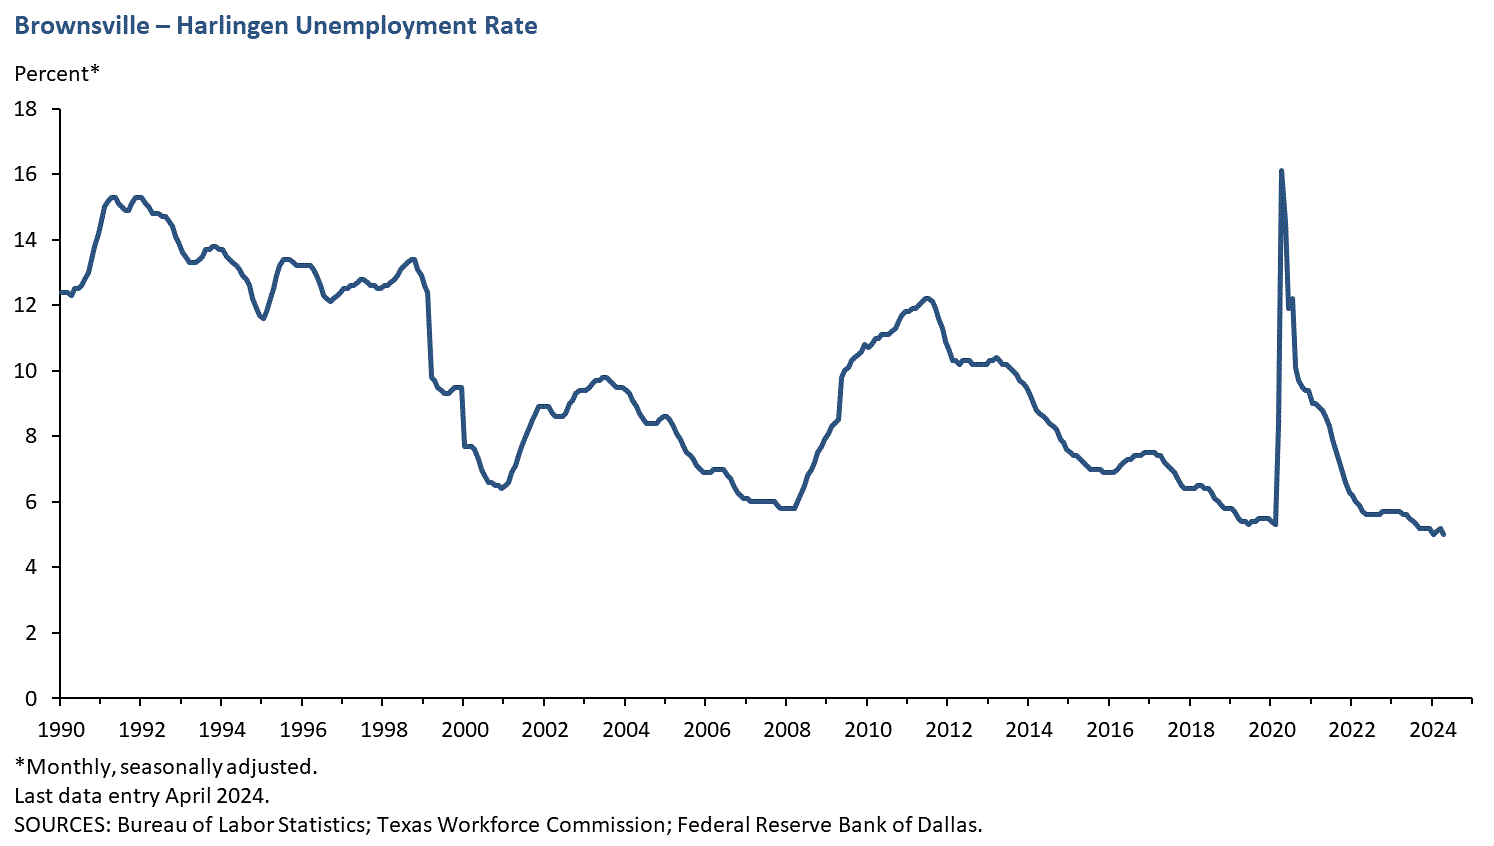 Brownsville - Harlingen Unemployment Rate